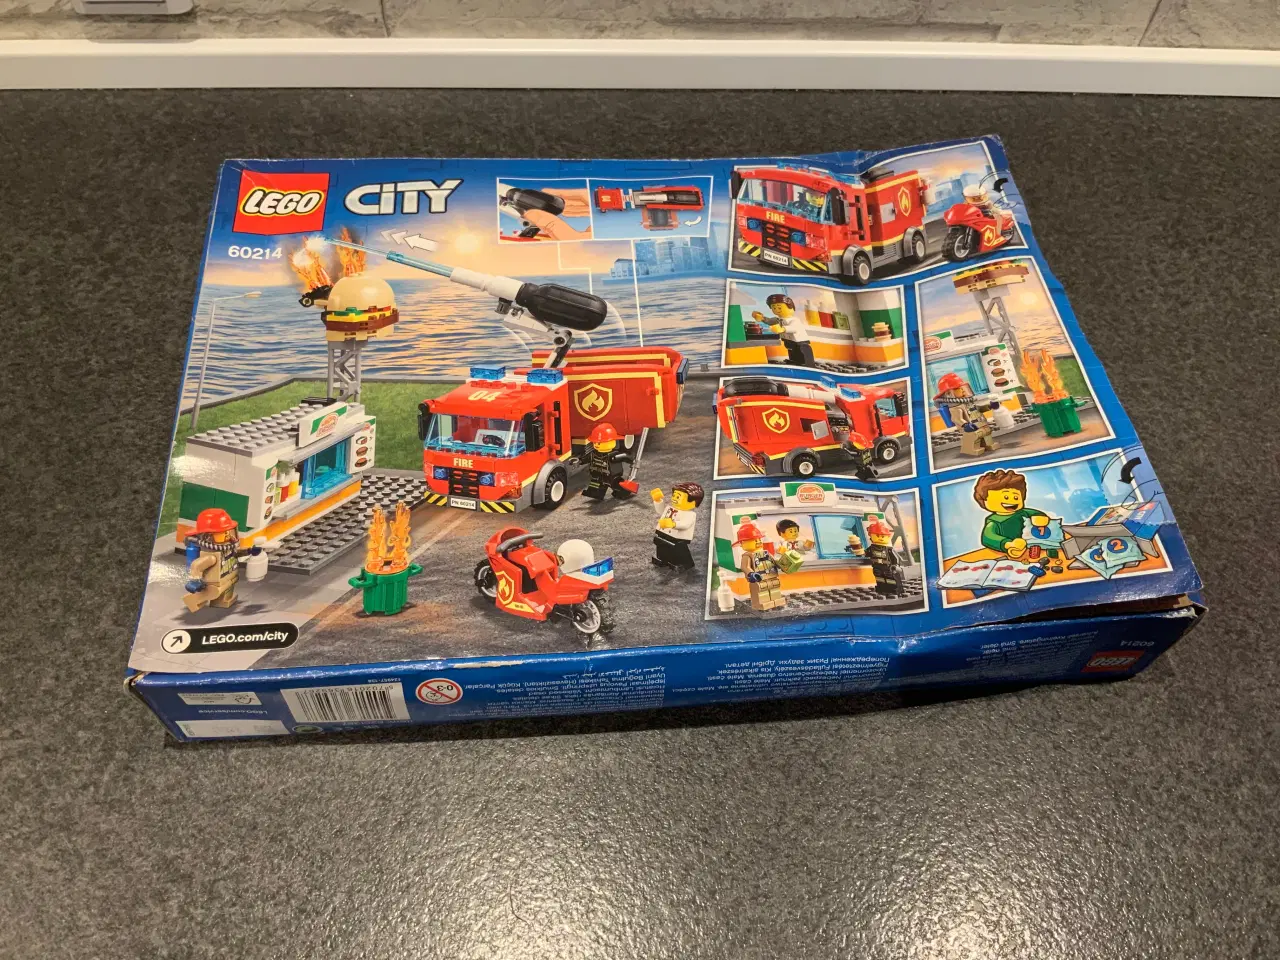 Billede 1 - Lego city 60214